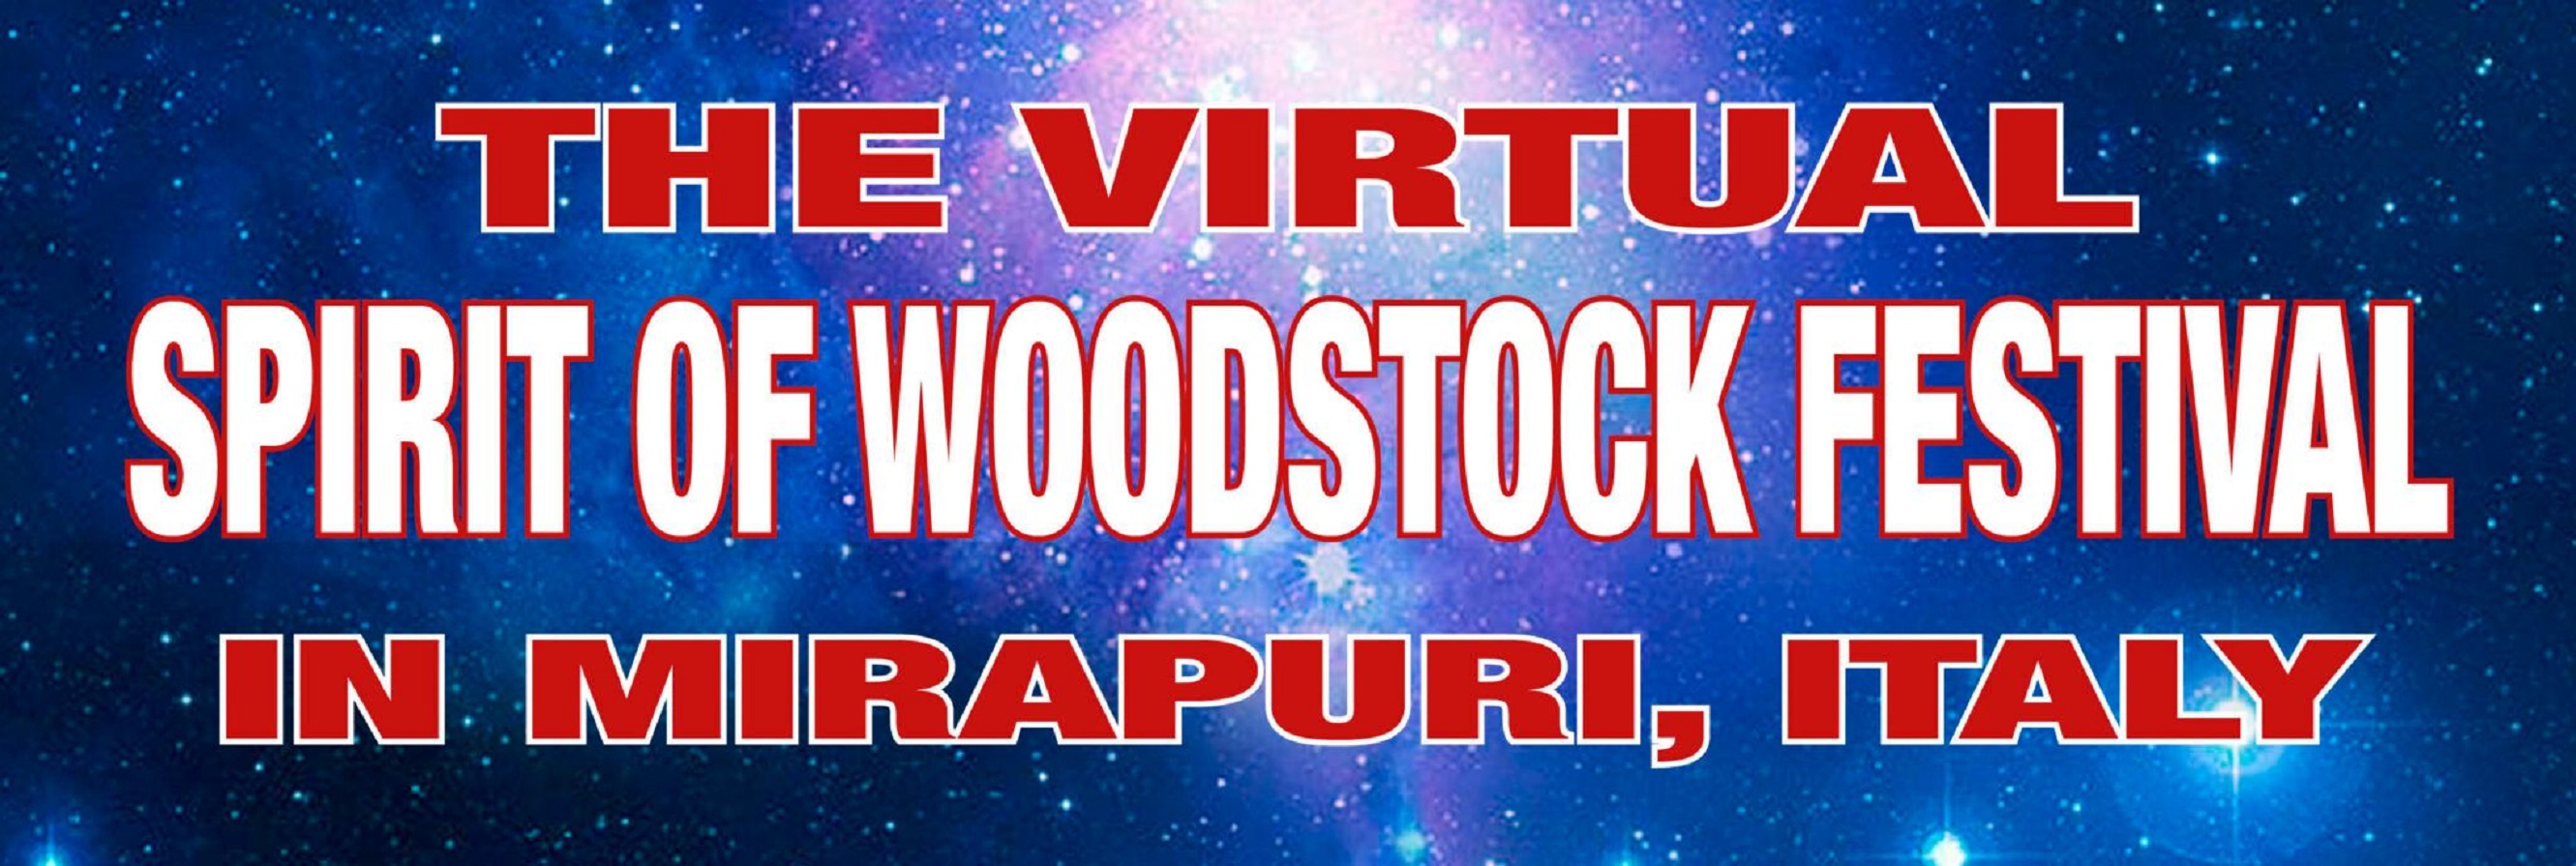 Episode 5: VIRTUAL SPIRIT OF WOODSTOCK FESTIVAL